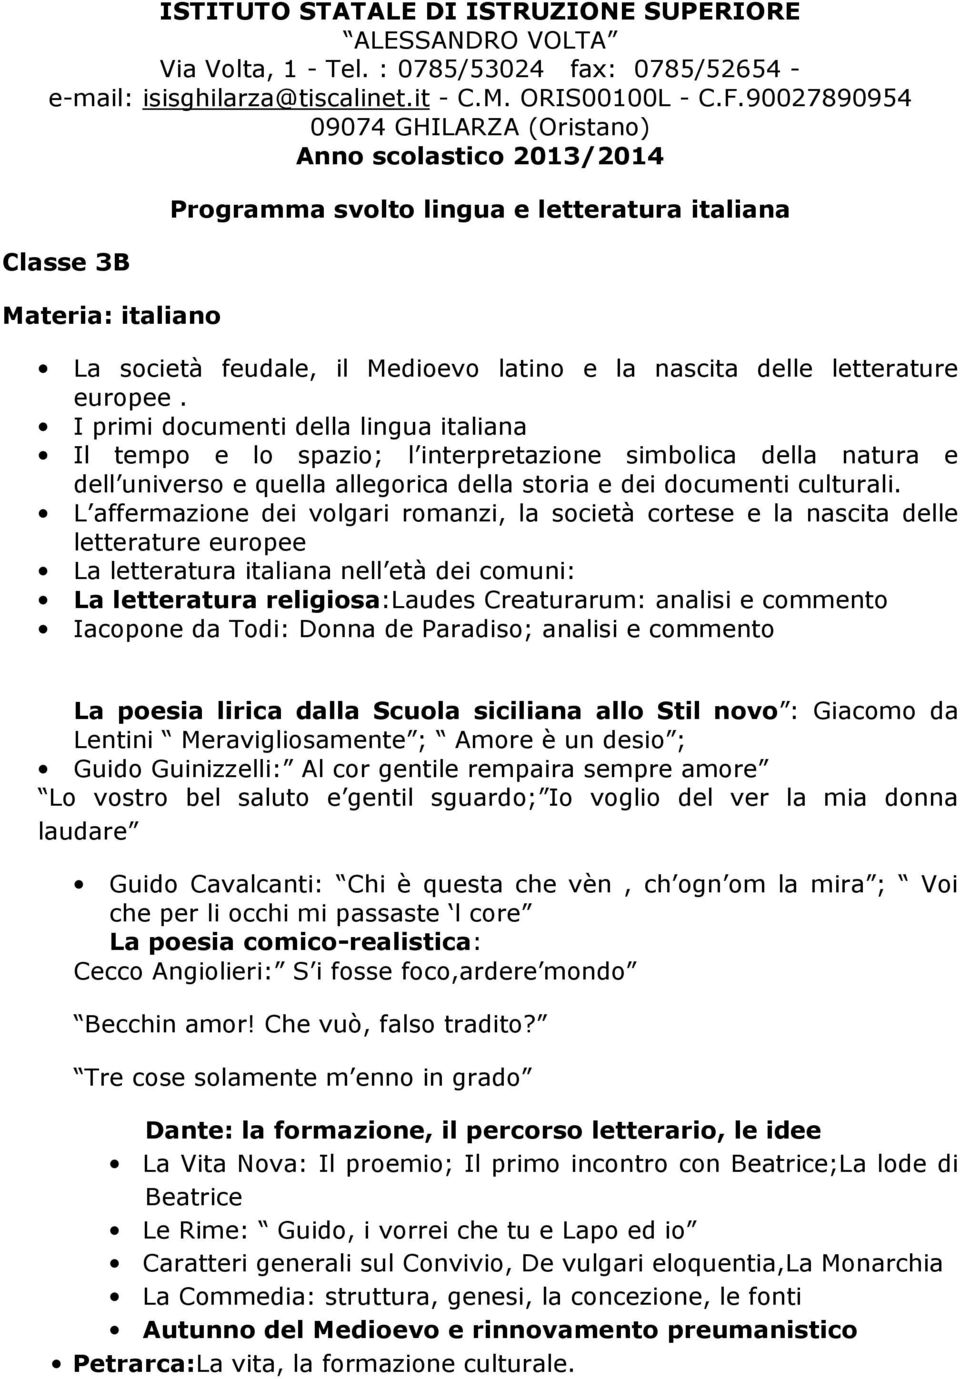 Programma Svolto Lingua E Letteratura Italiana Pdf Free Download